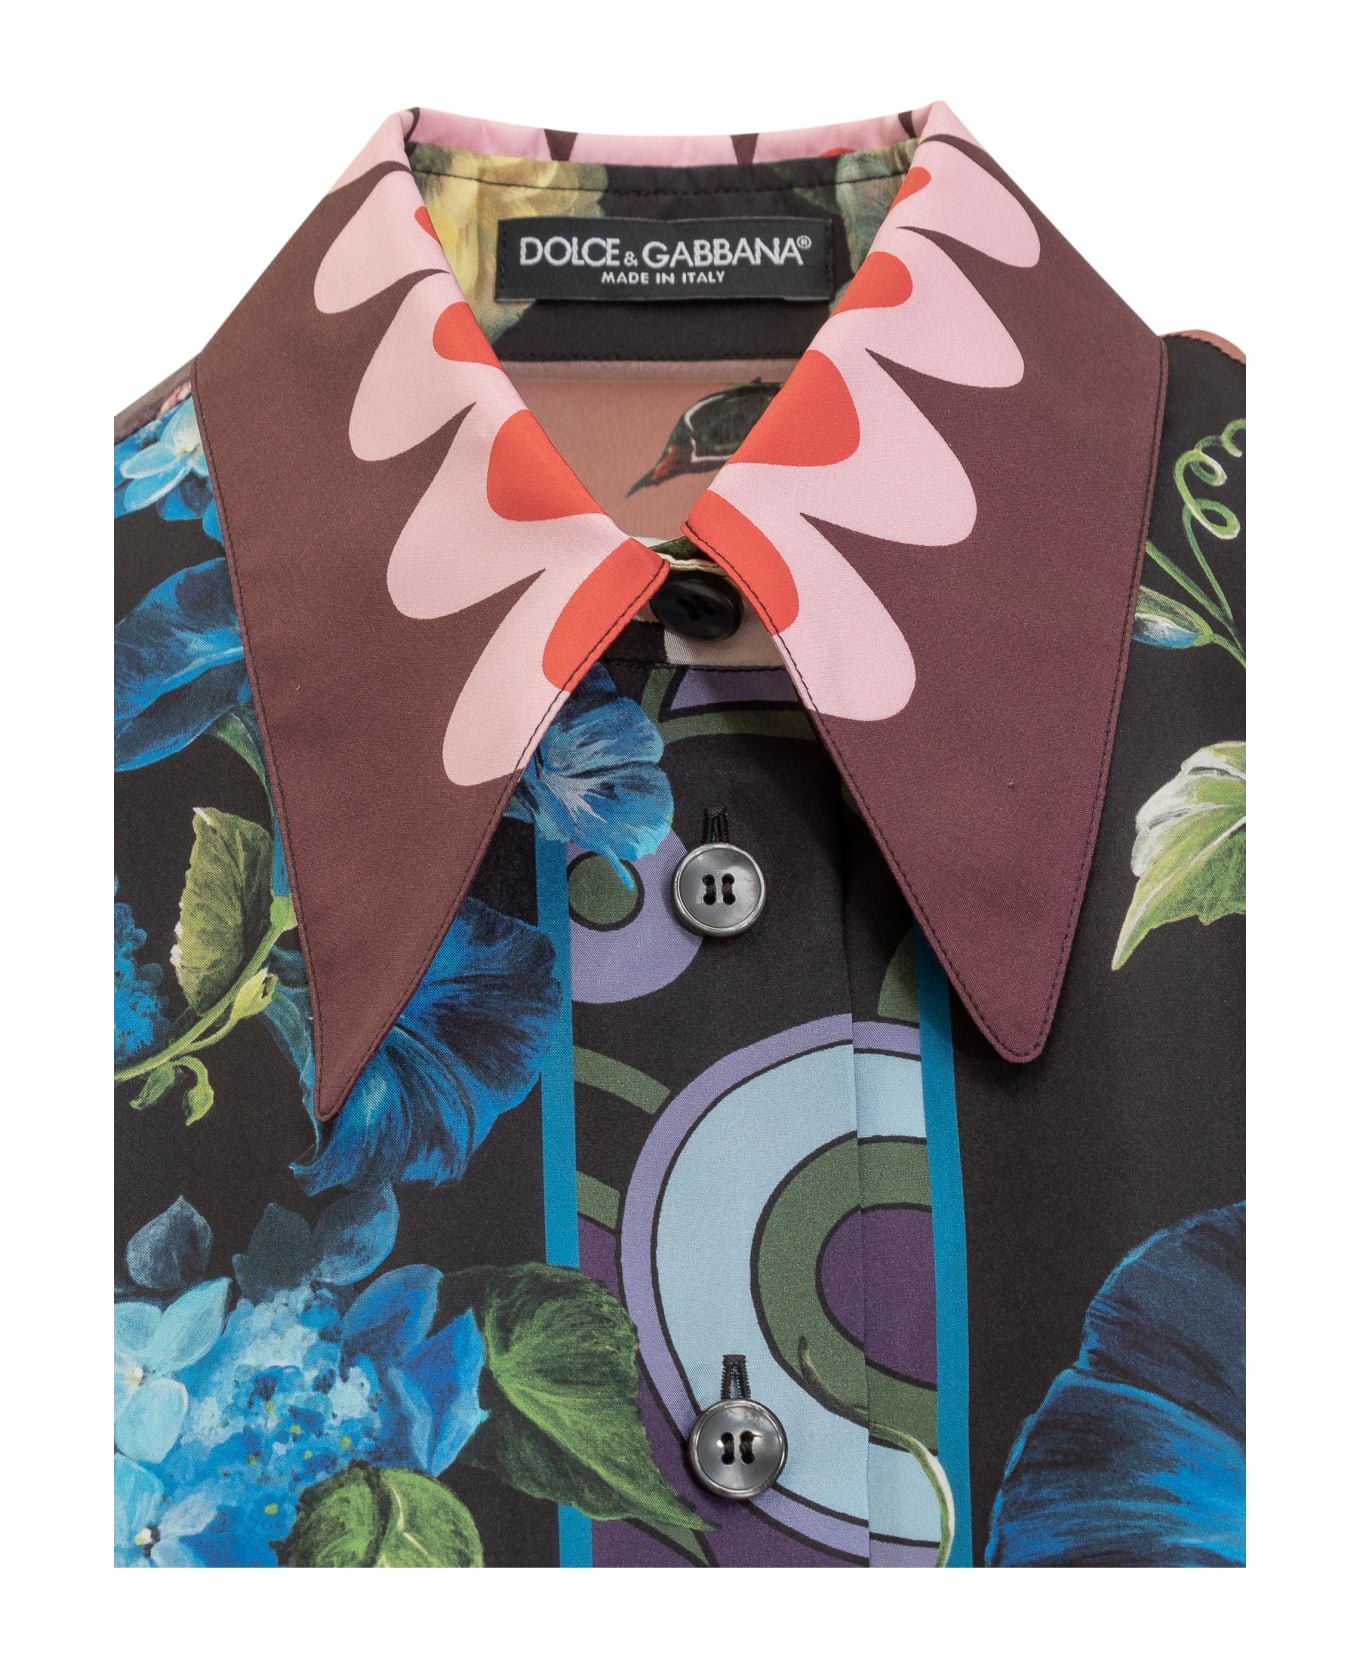 Dolce & Gabbana Floral Print Shirt - Variante Abbinata ブラウス